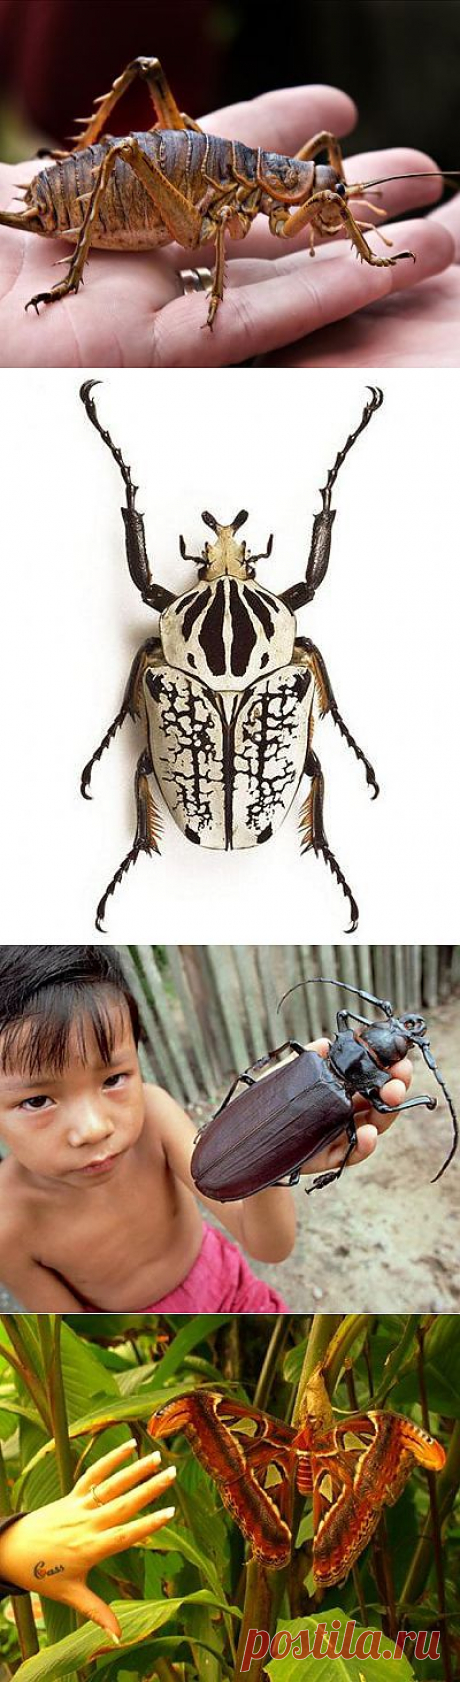 10 крупнейших насекомых мира